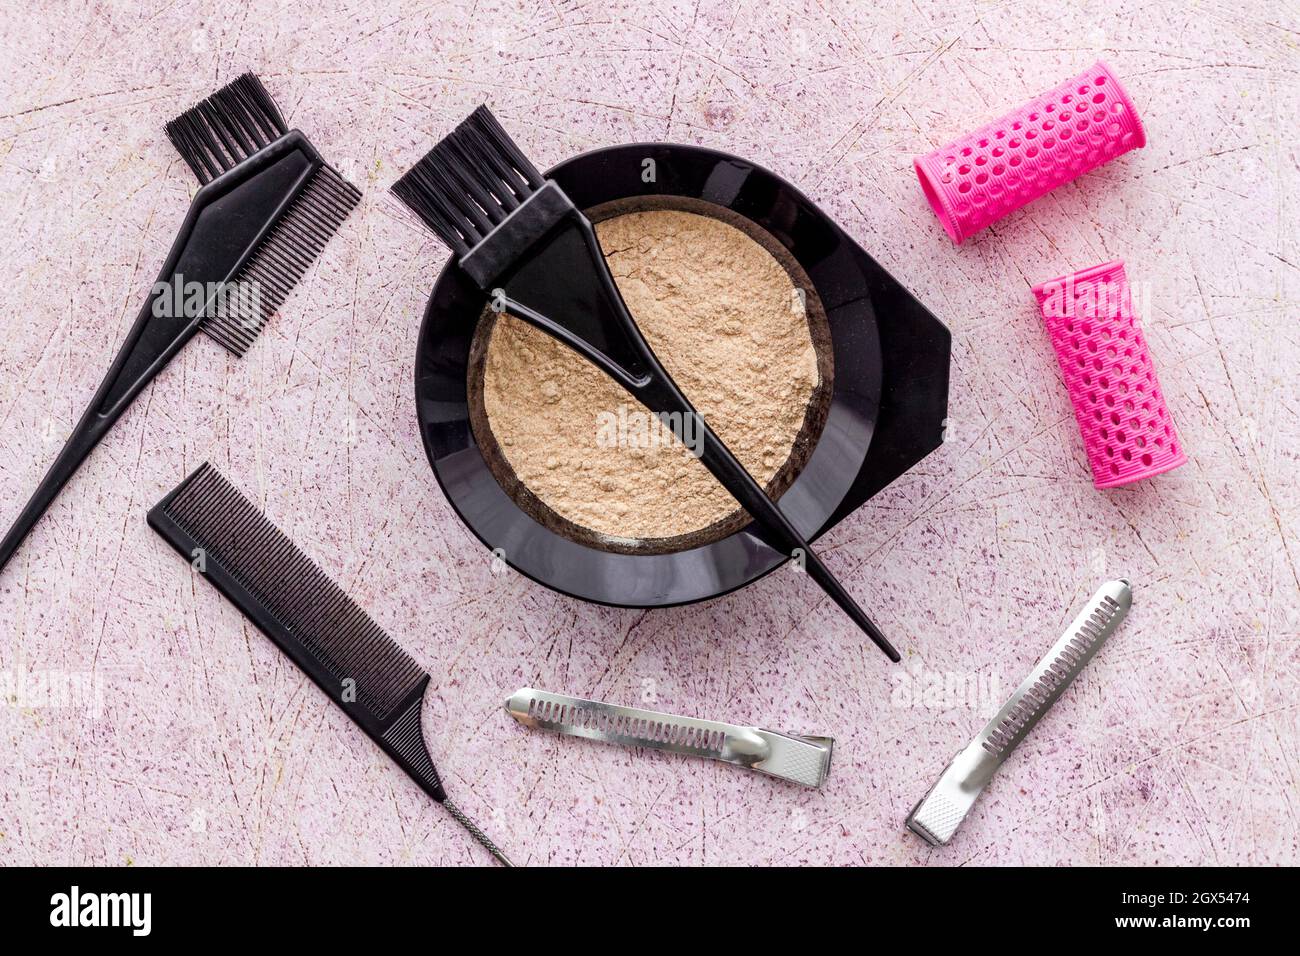 Salón de belleza para teñir el cabello con cepillo y cuenco para mezclar  Fotografía de stock - Alamy